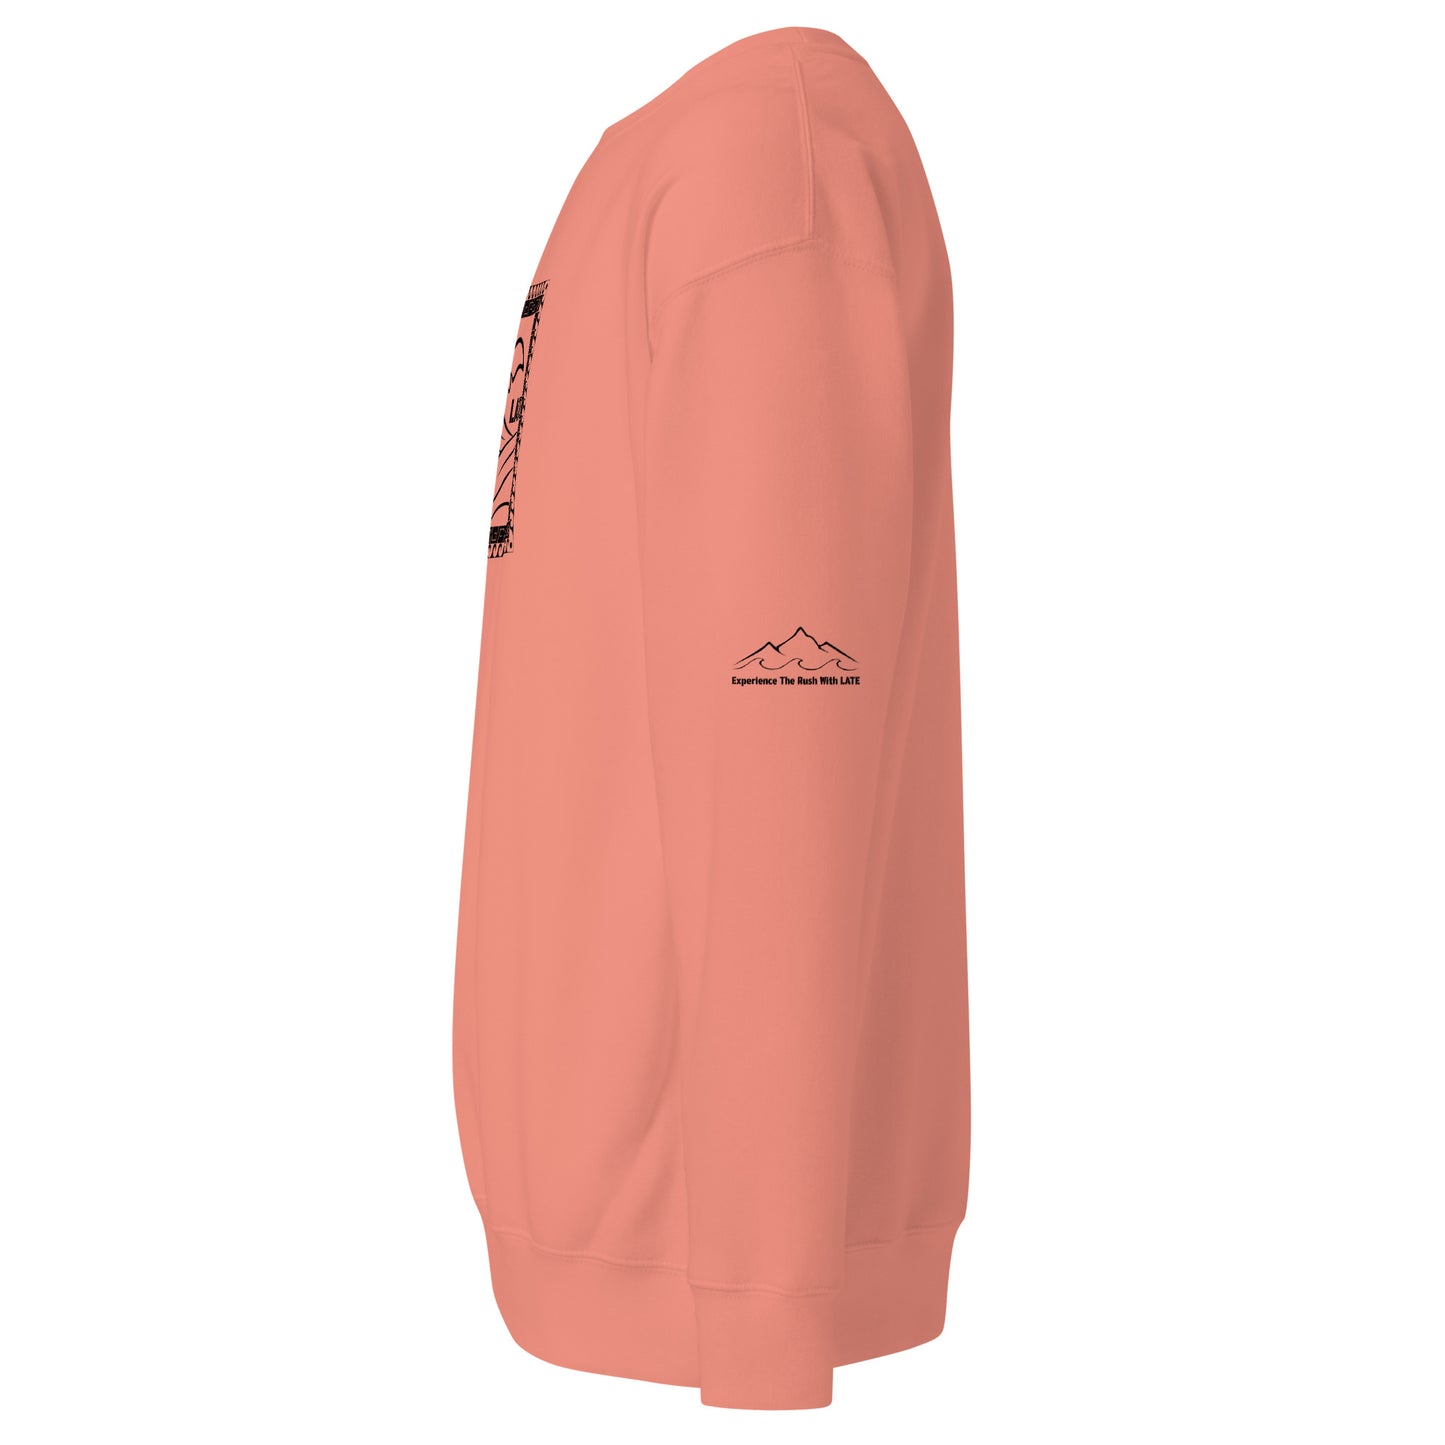 Sweatshirt surfeur Tricky Wave vague et montagne texte experience the rush. sweat de profil couleur rose